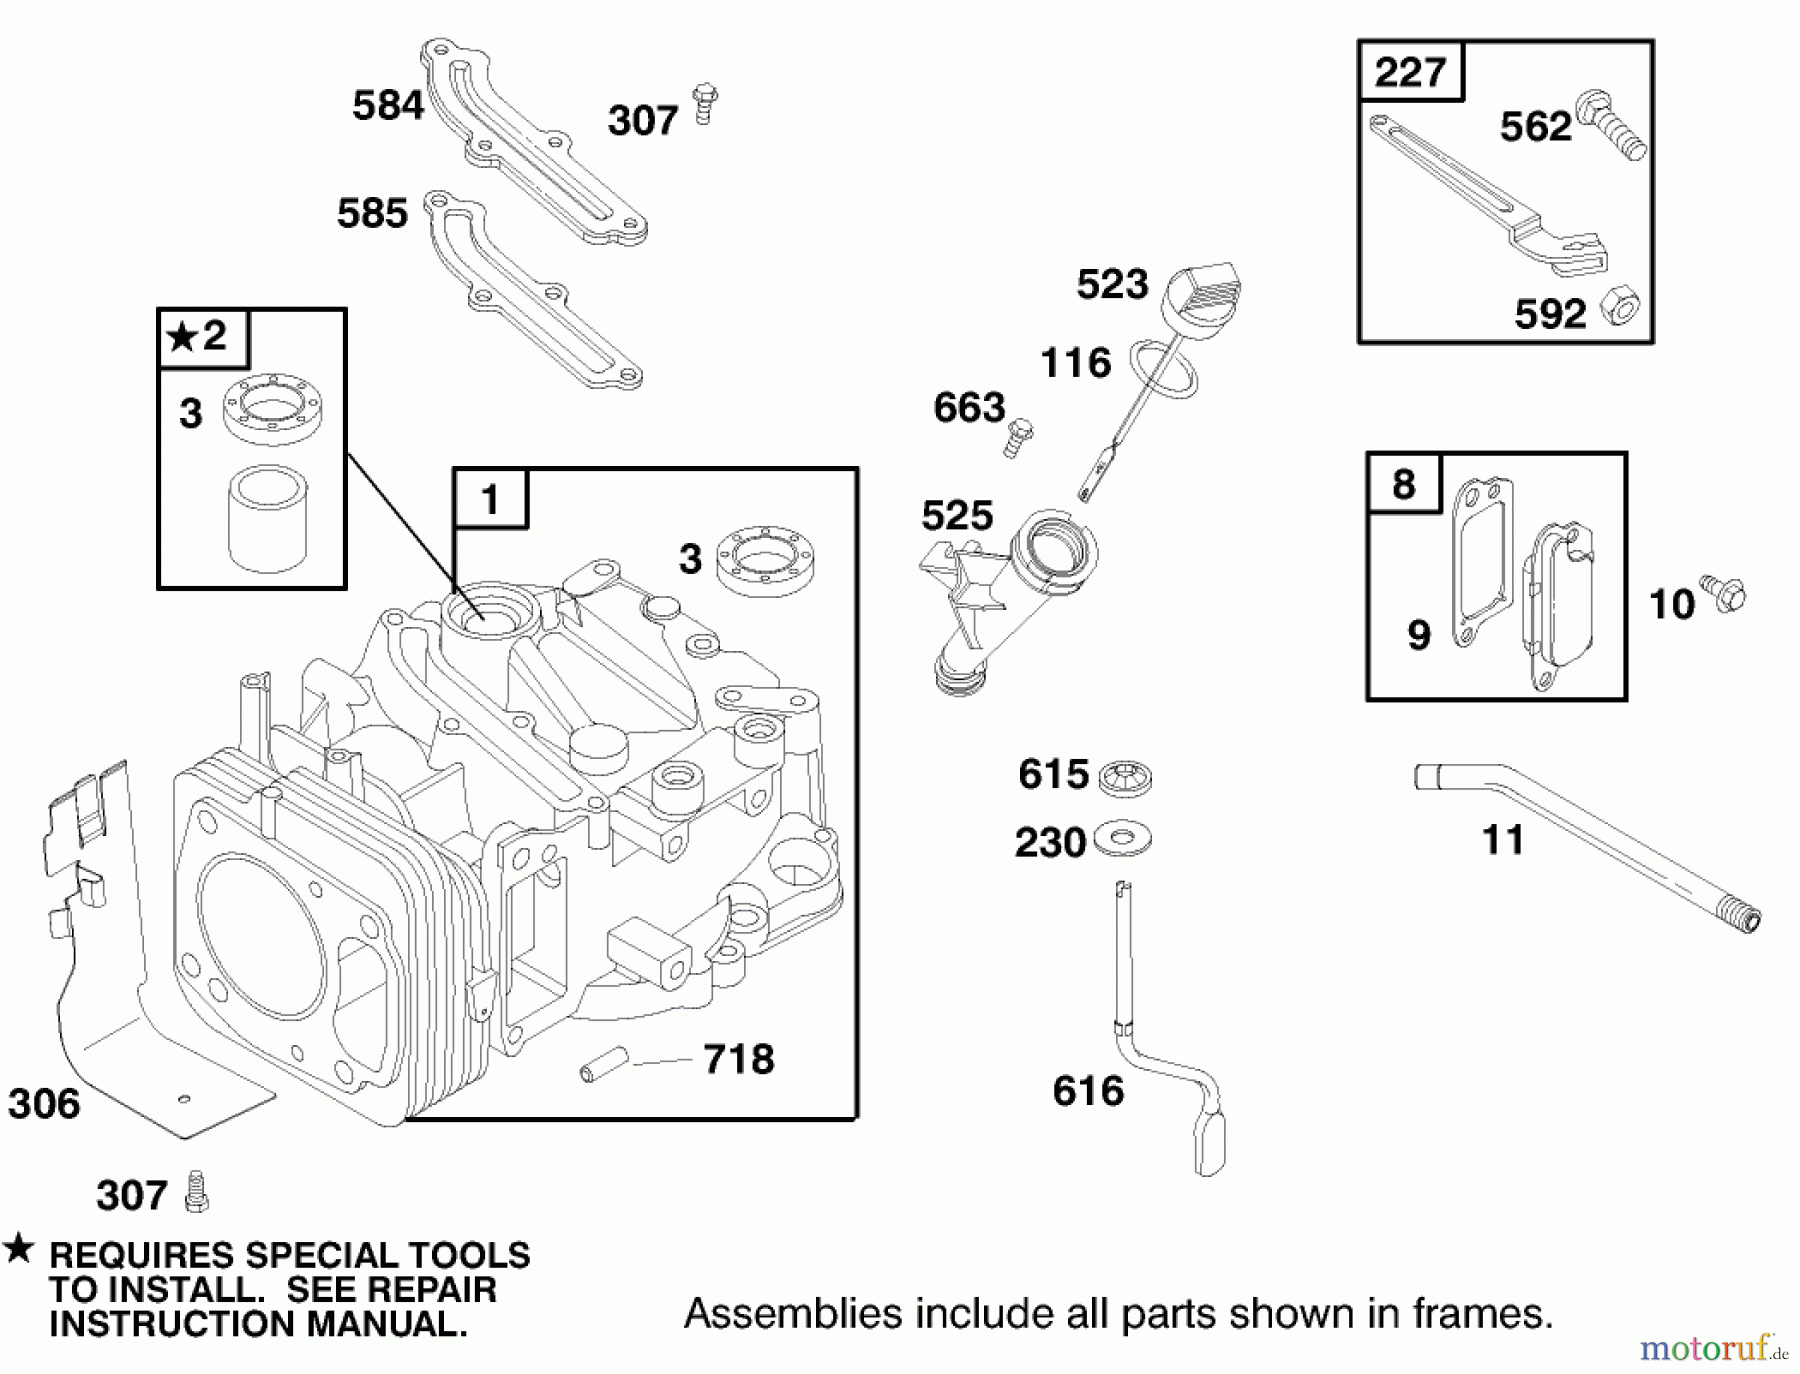  Toro Neu Mowers, Walk-Behind Seite 2 22160 - Toro Recycler Mower, 1999 (9900001-9999999) ENGINE GTS-200 #1